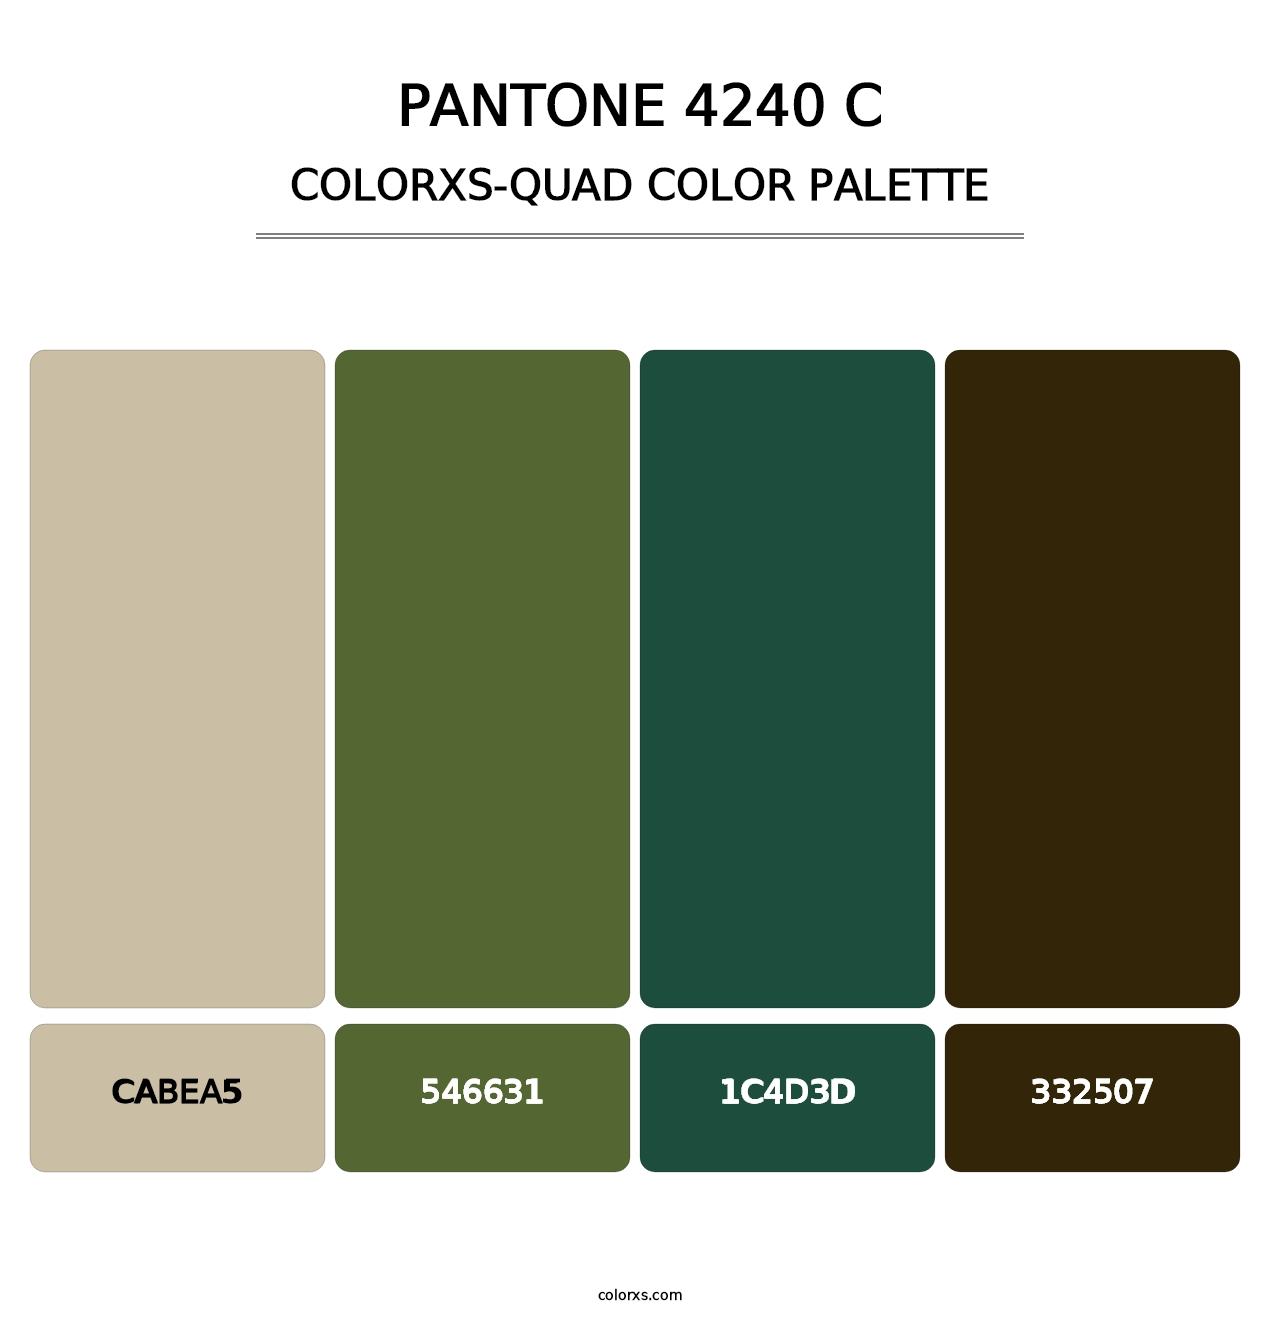 PANTONE 4240 C - Colorxs Quad Palette